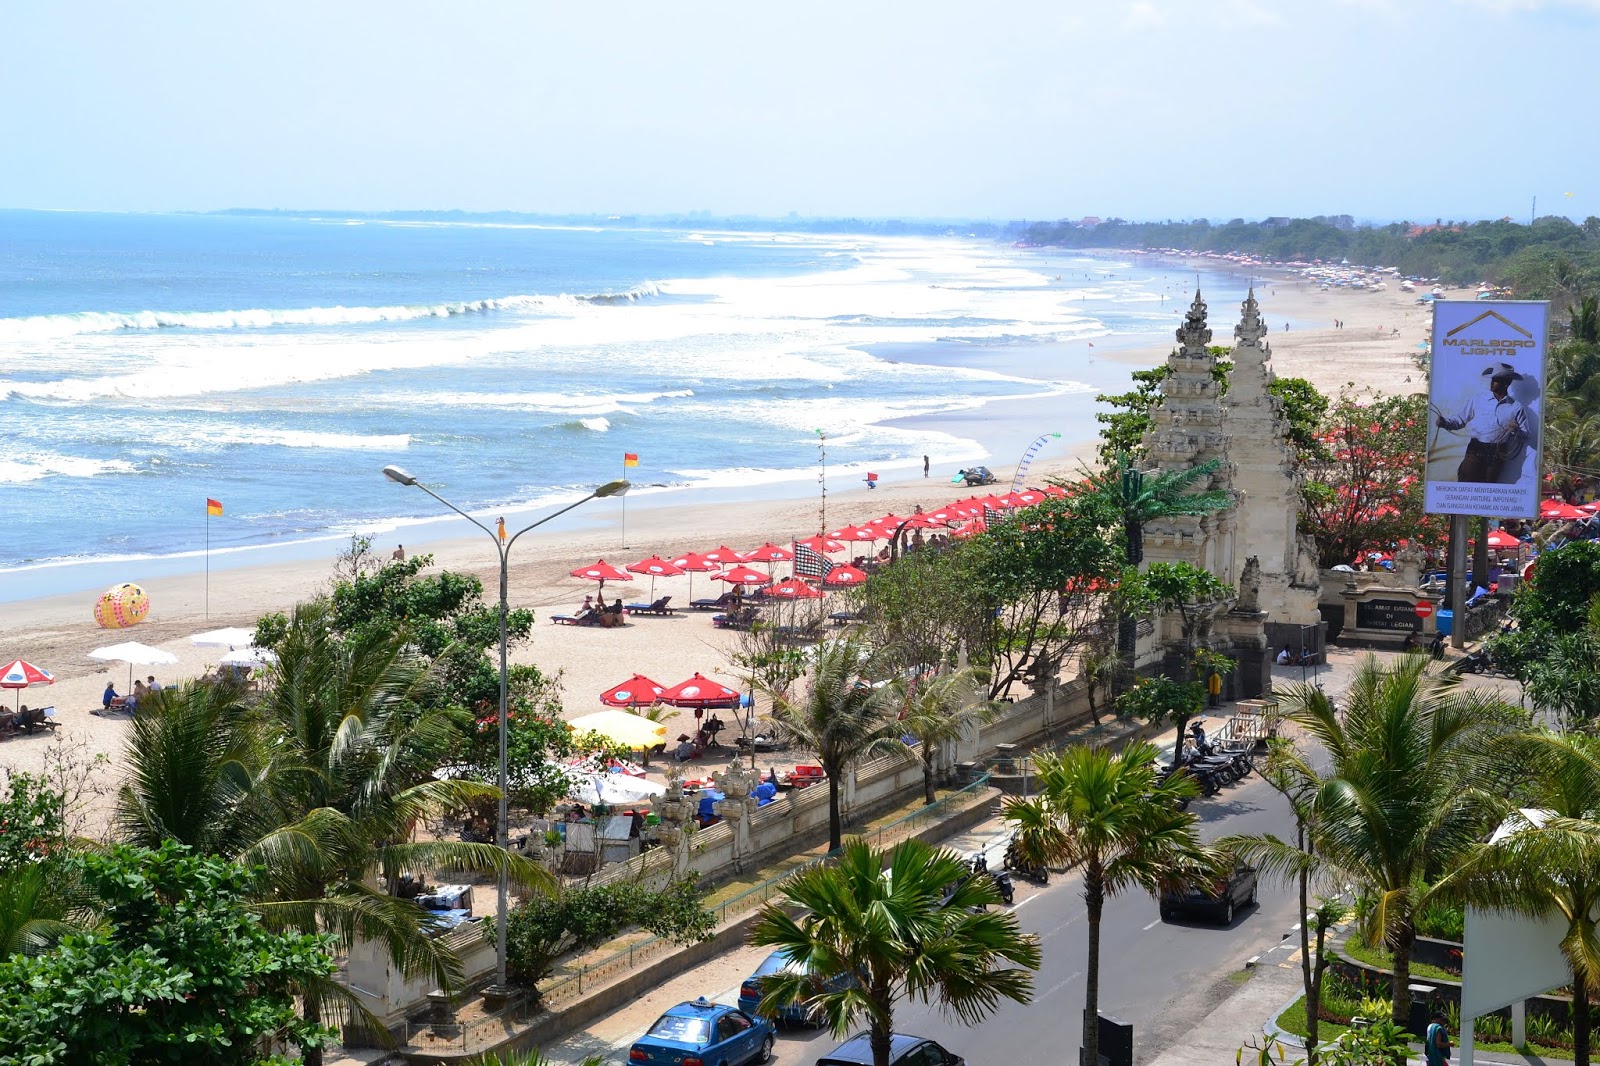 Harga Tiket Masuk dan Fasilitas Pantai  Kuta  Bali Terbaru 